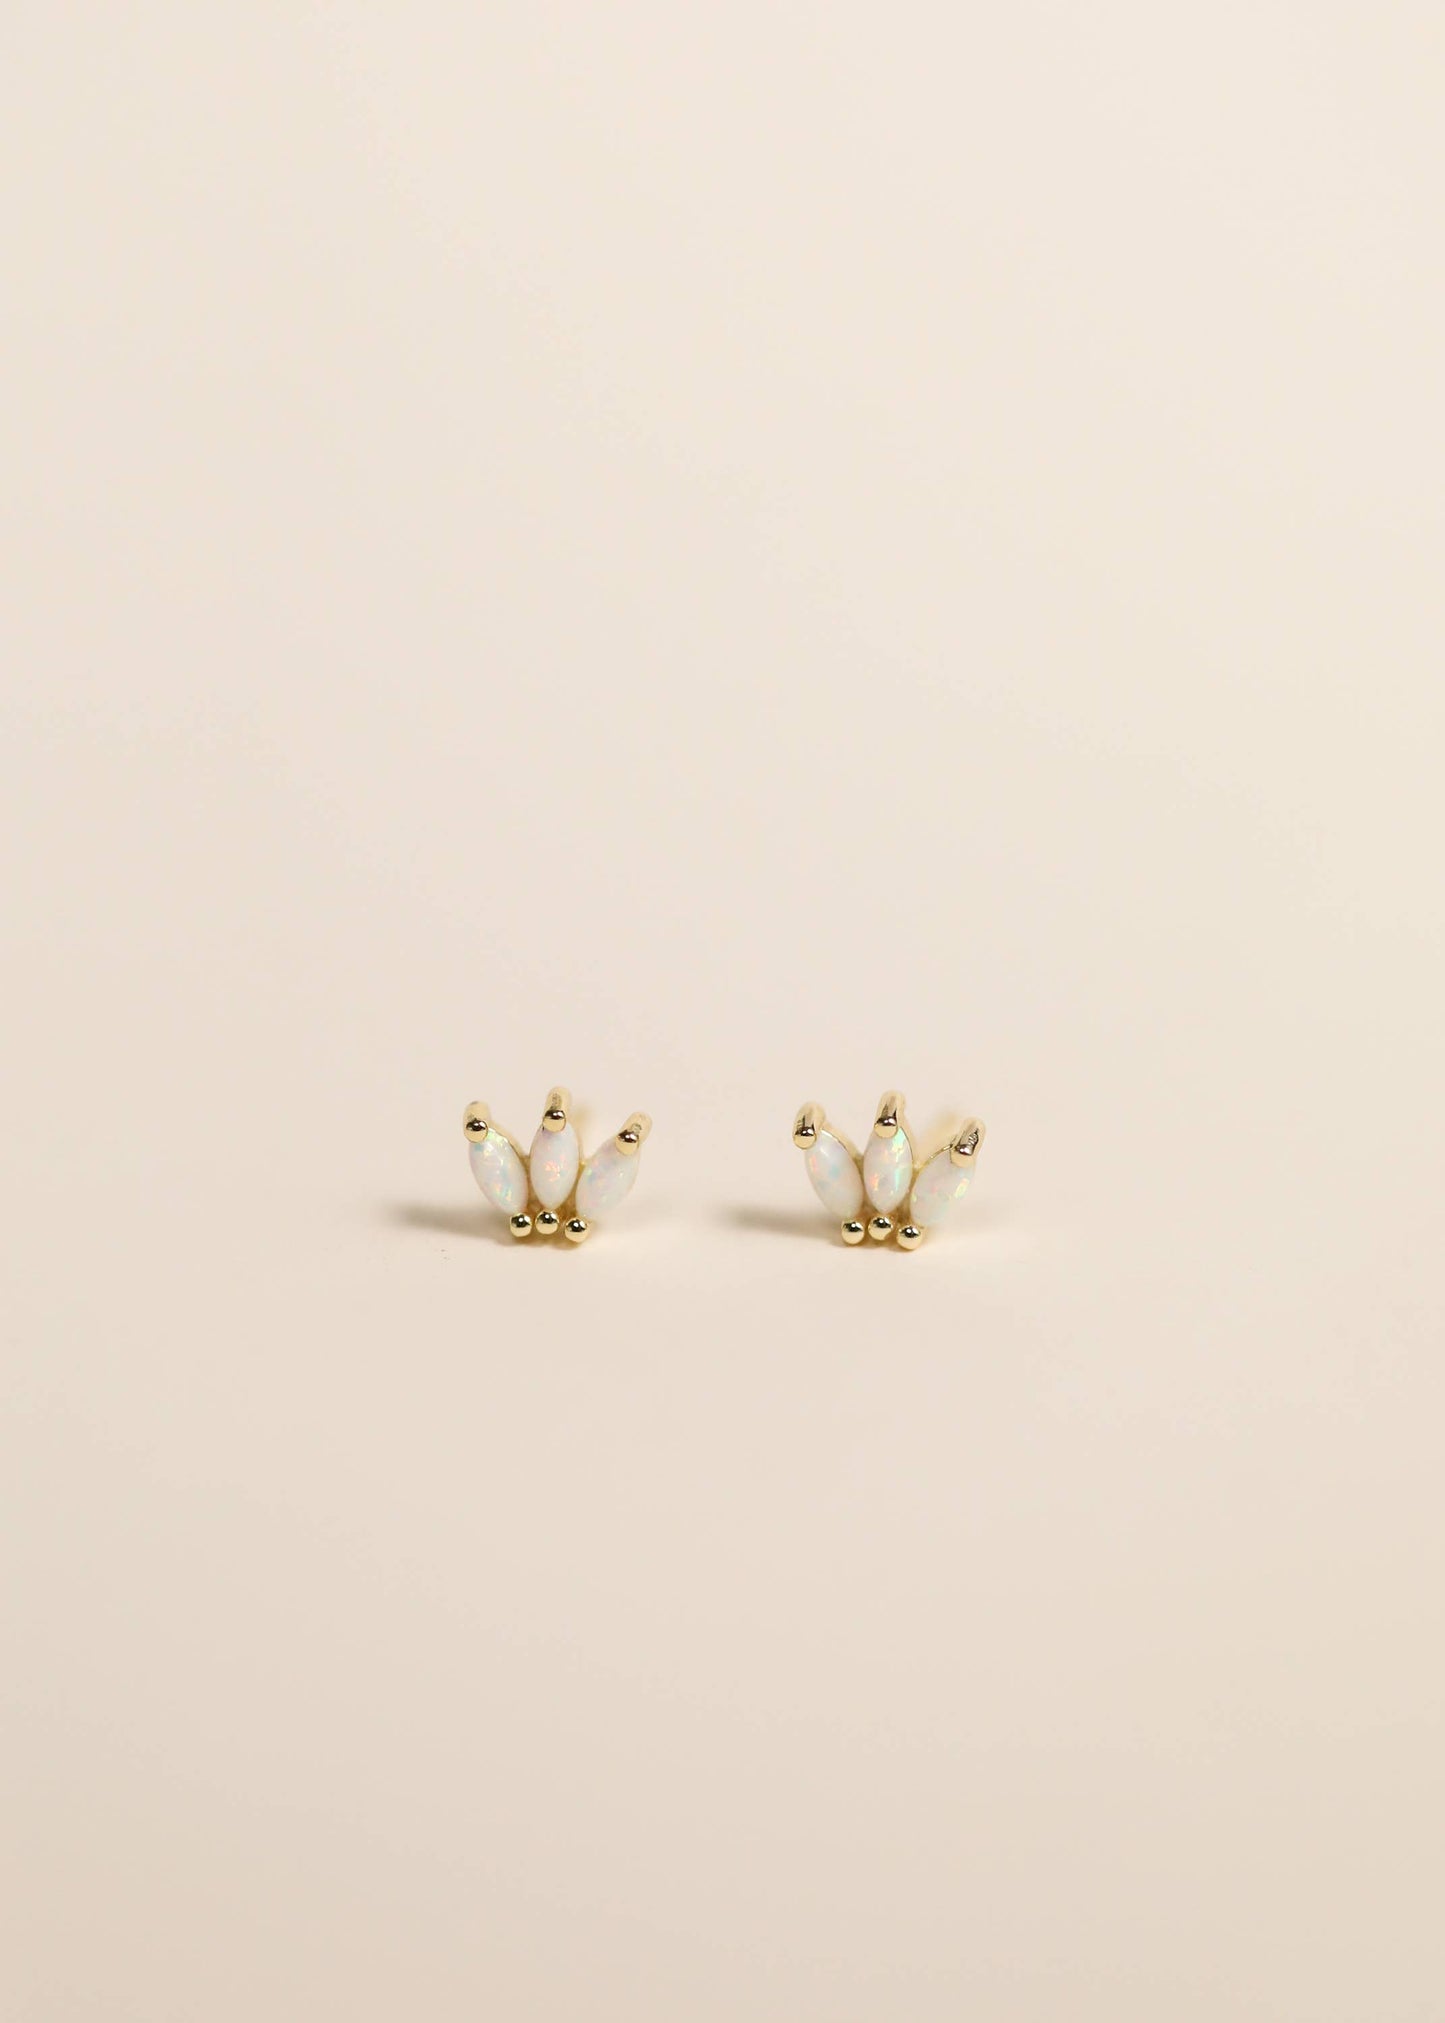 Opal Crown Stud Earring